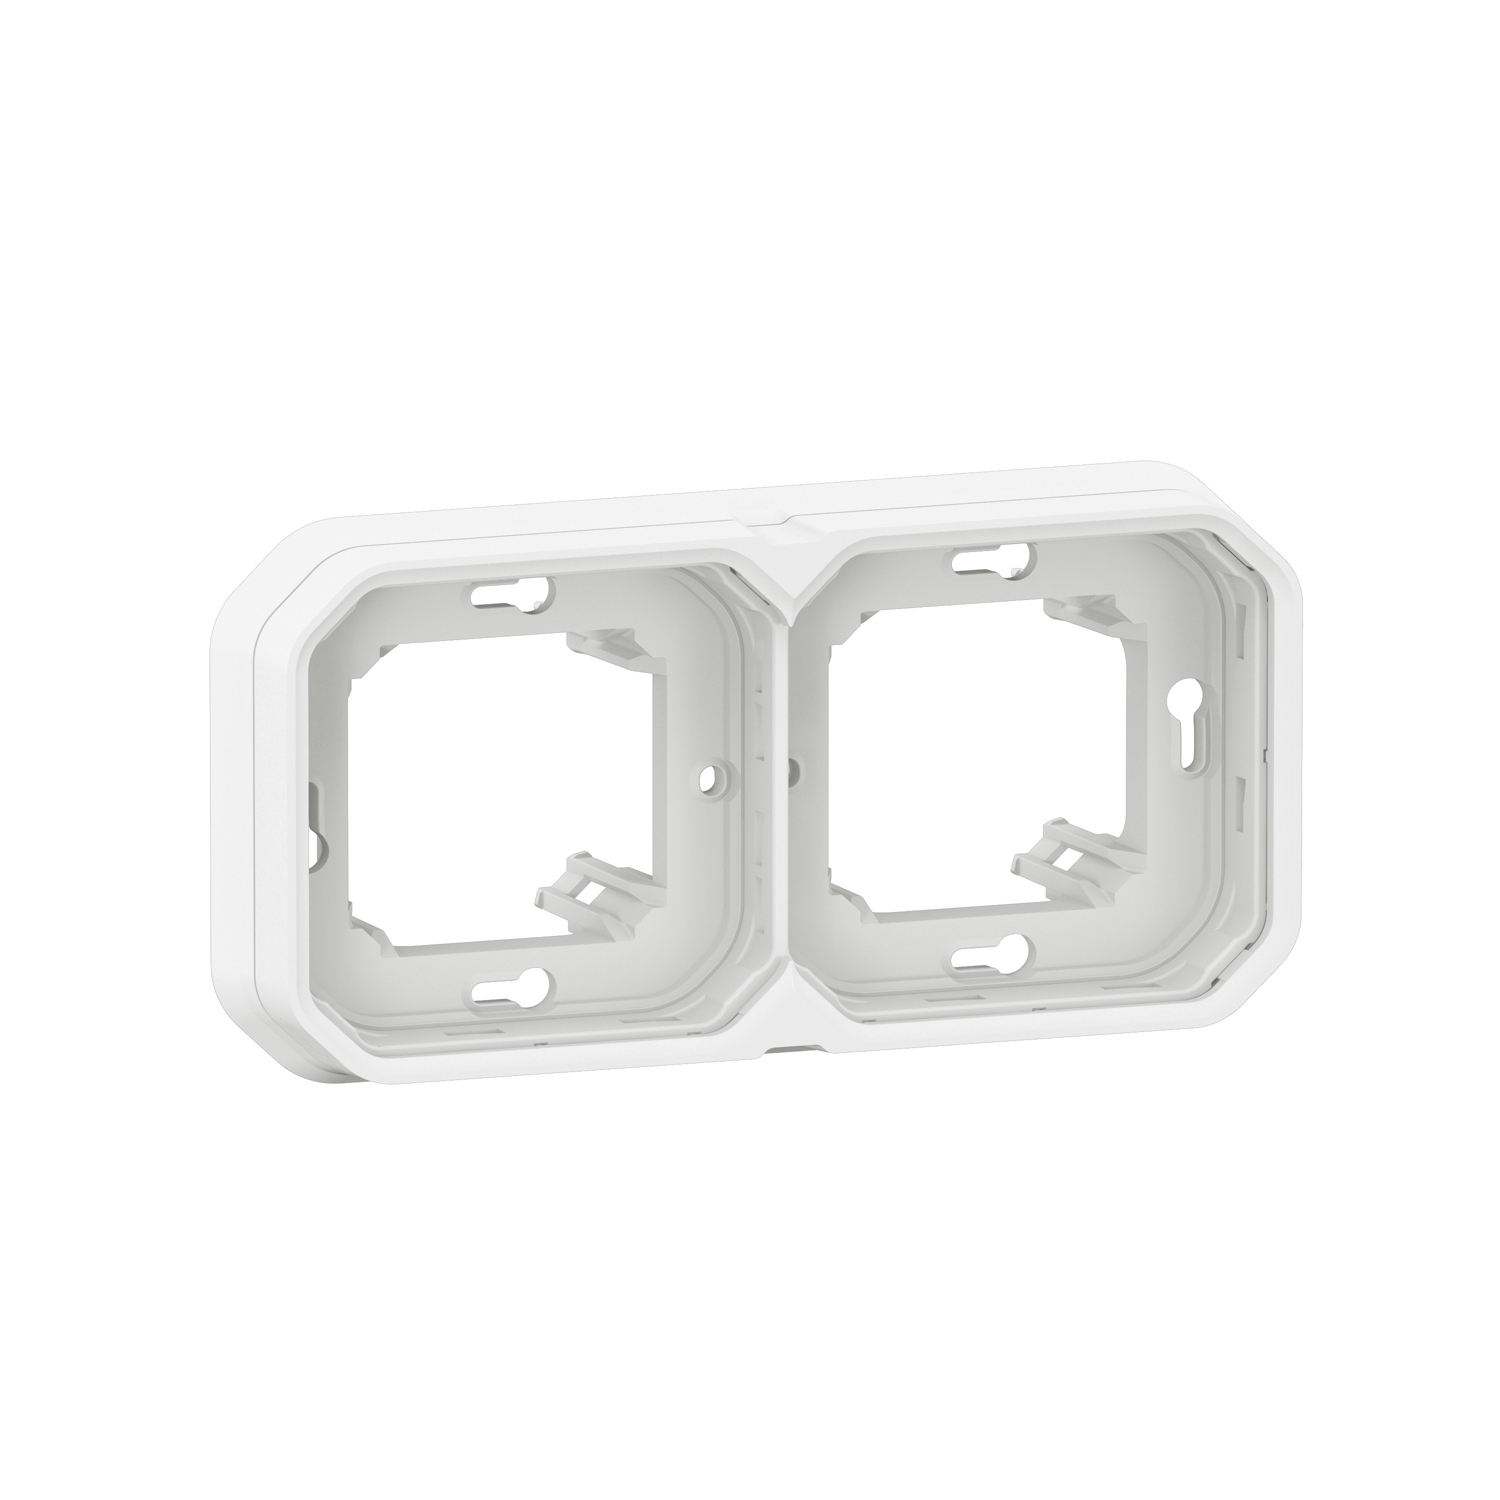  Support plaque pour montage en encastré - Plexo composable - blanc 